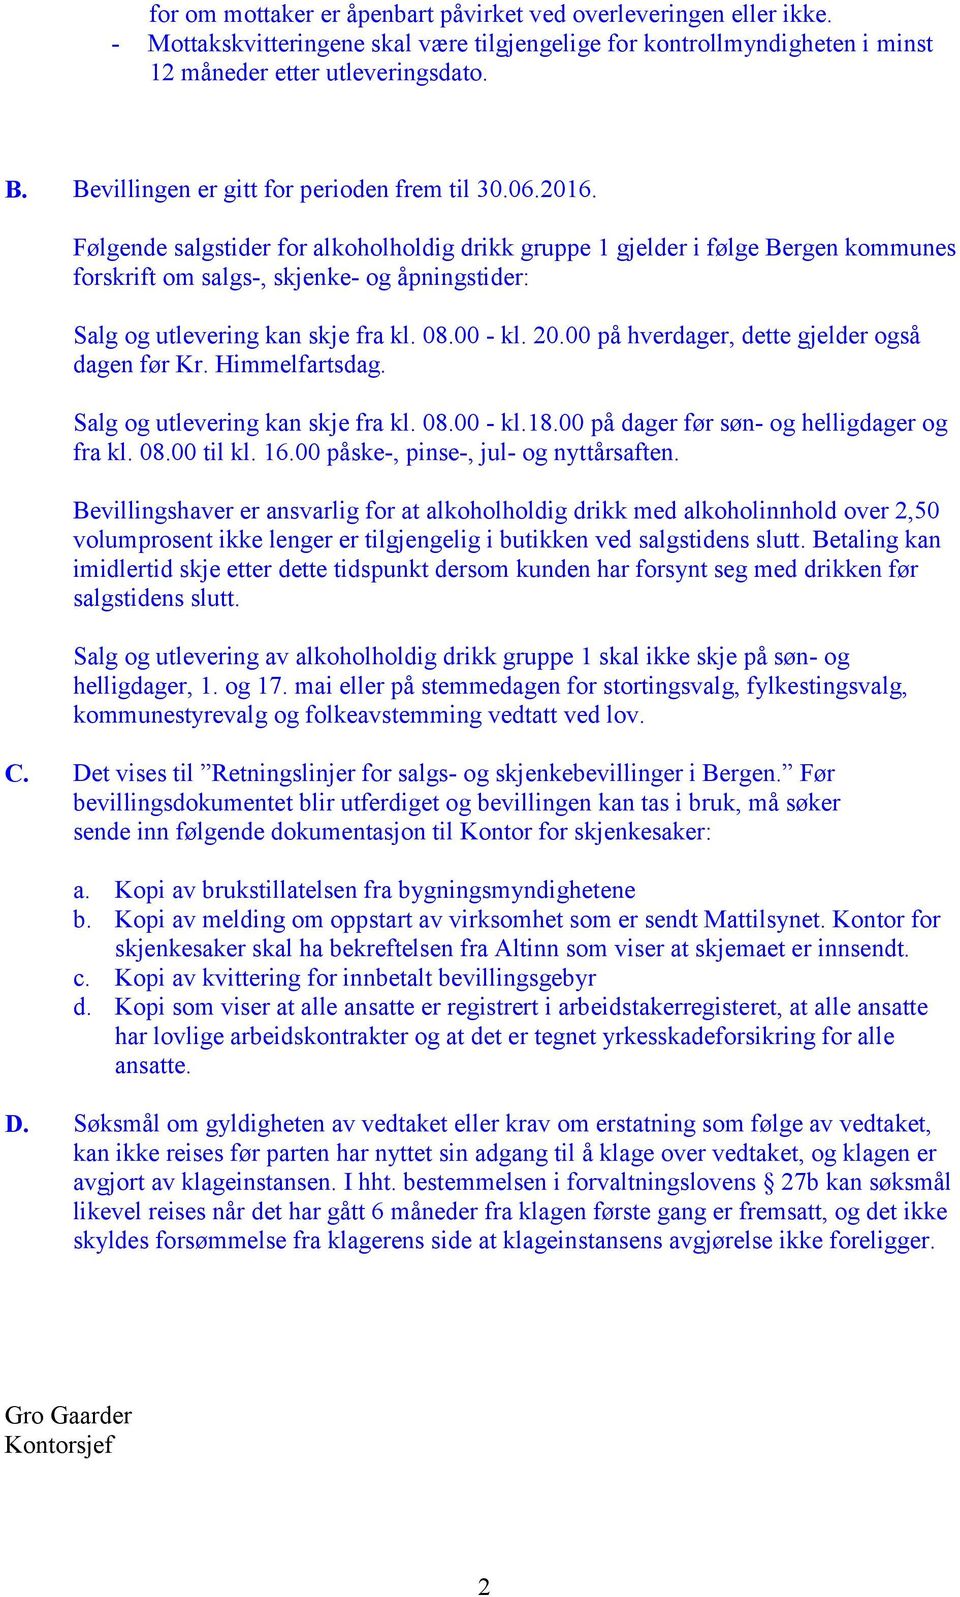 Følgende salgstider for alkoholholdig drikk gruppe 1 gjelder i følge Bergen kommunes forskrift om salgs-, skjenke- og åpningstider: Salg og utlevering kan skje fra kl. 08.00 - kl. 20.